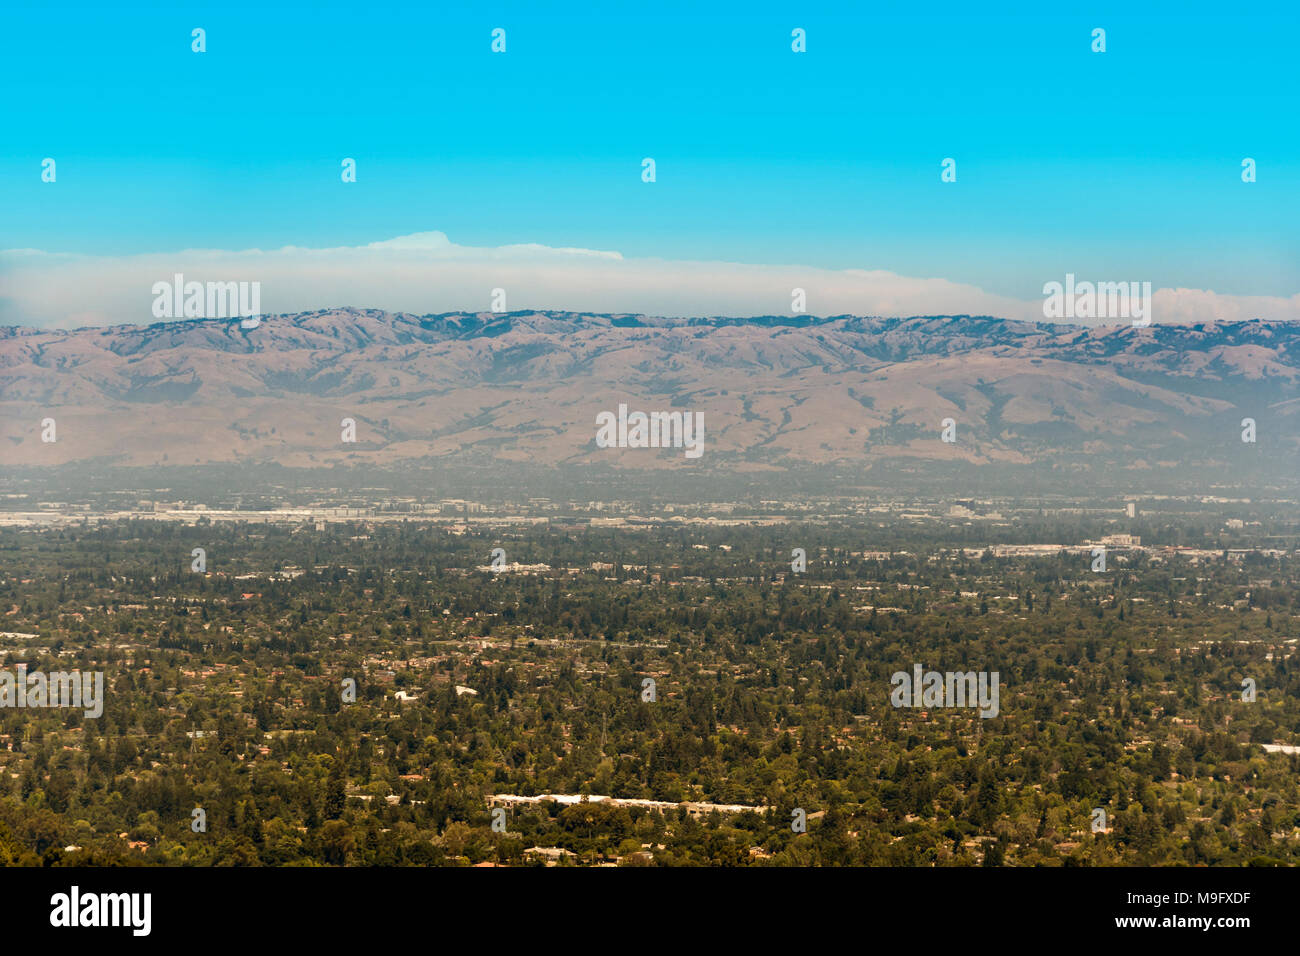 El sur de la Bahía de San Francisco, también llamado Silicon Valley, con smog visible por encima de la zona en un día soleado. La parte que vemos en la imagen es el sur de San José. Foto de stock